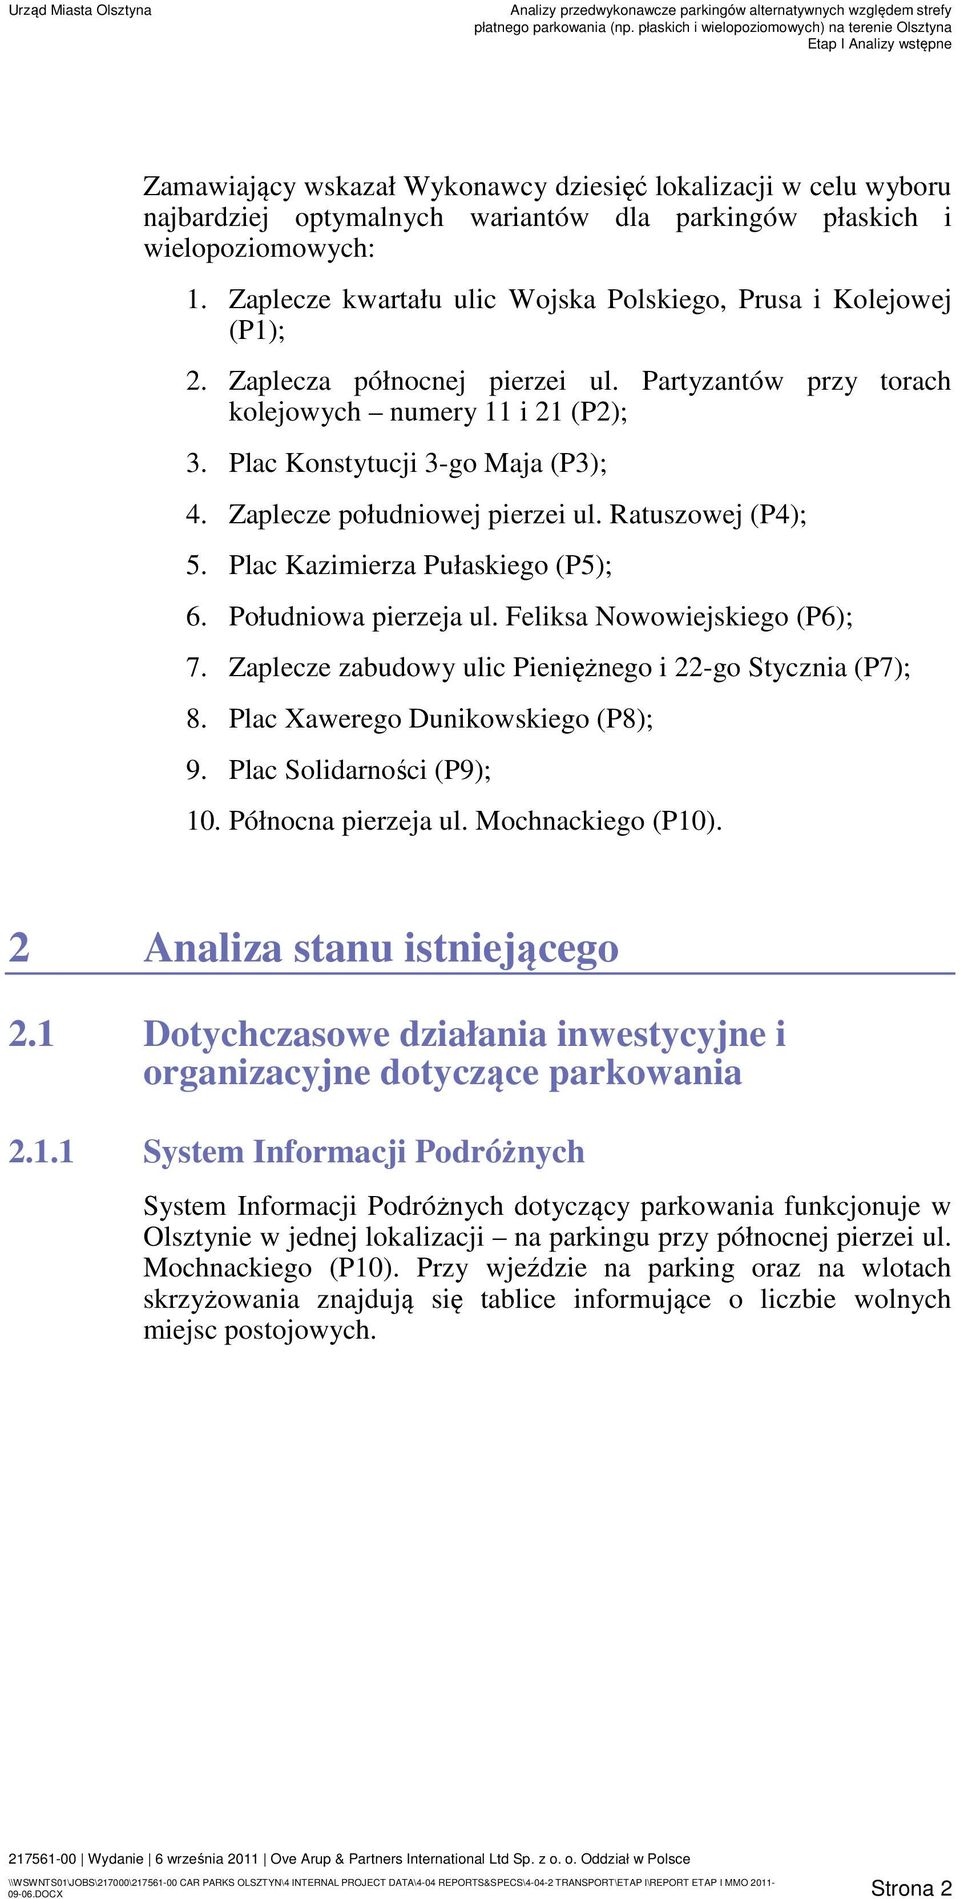 Zaplecze południowej pierzei ul. Ratuszowej (P4); 5. Plac Kazimierza Pułaskiego (P5); 6. Południowa pierzeja ul. Feliksa Nowowiejskiego (P6); 7.